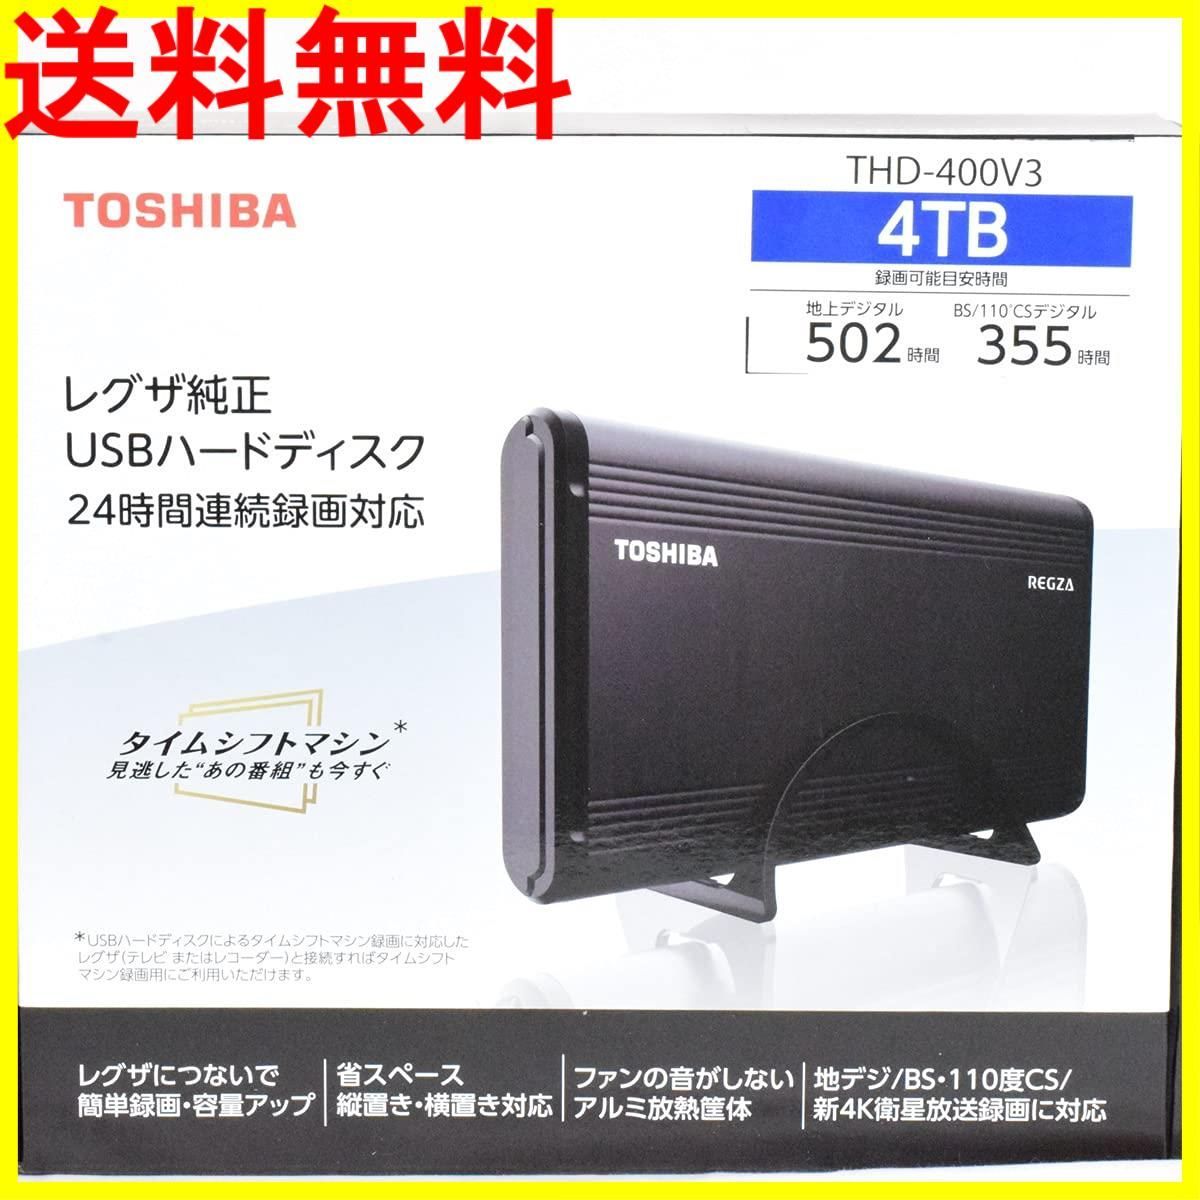 【新品未使用】東芝(TOSHIBA) THD-400V3 V3